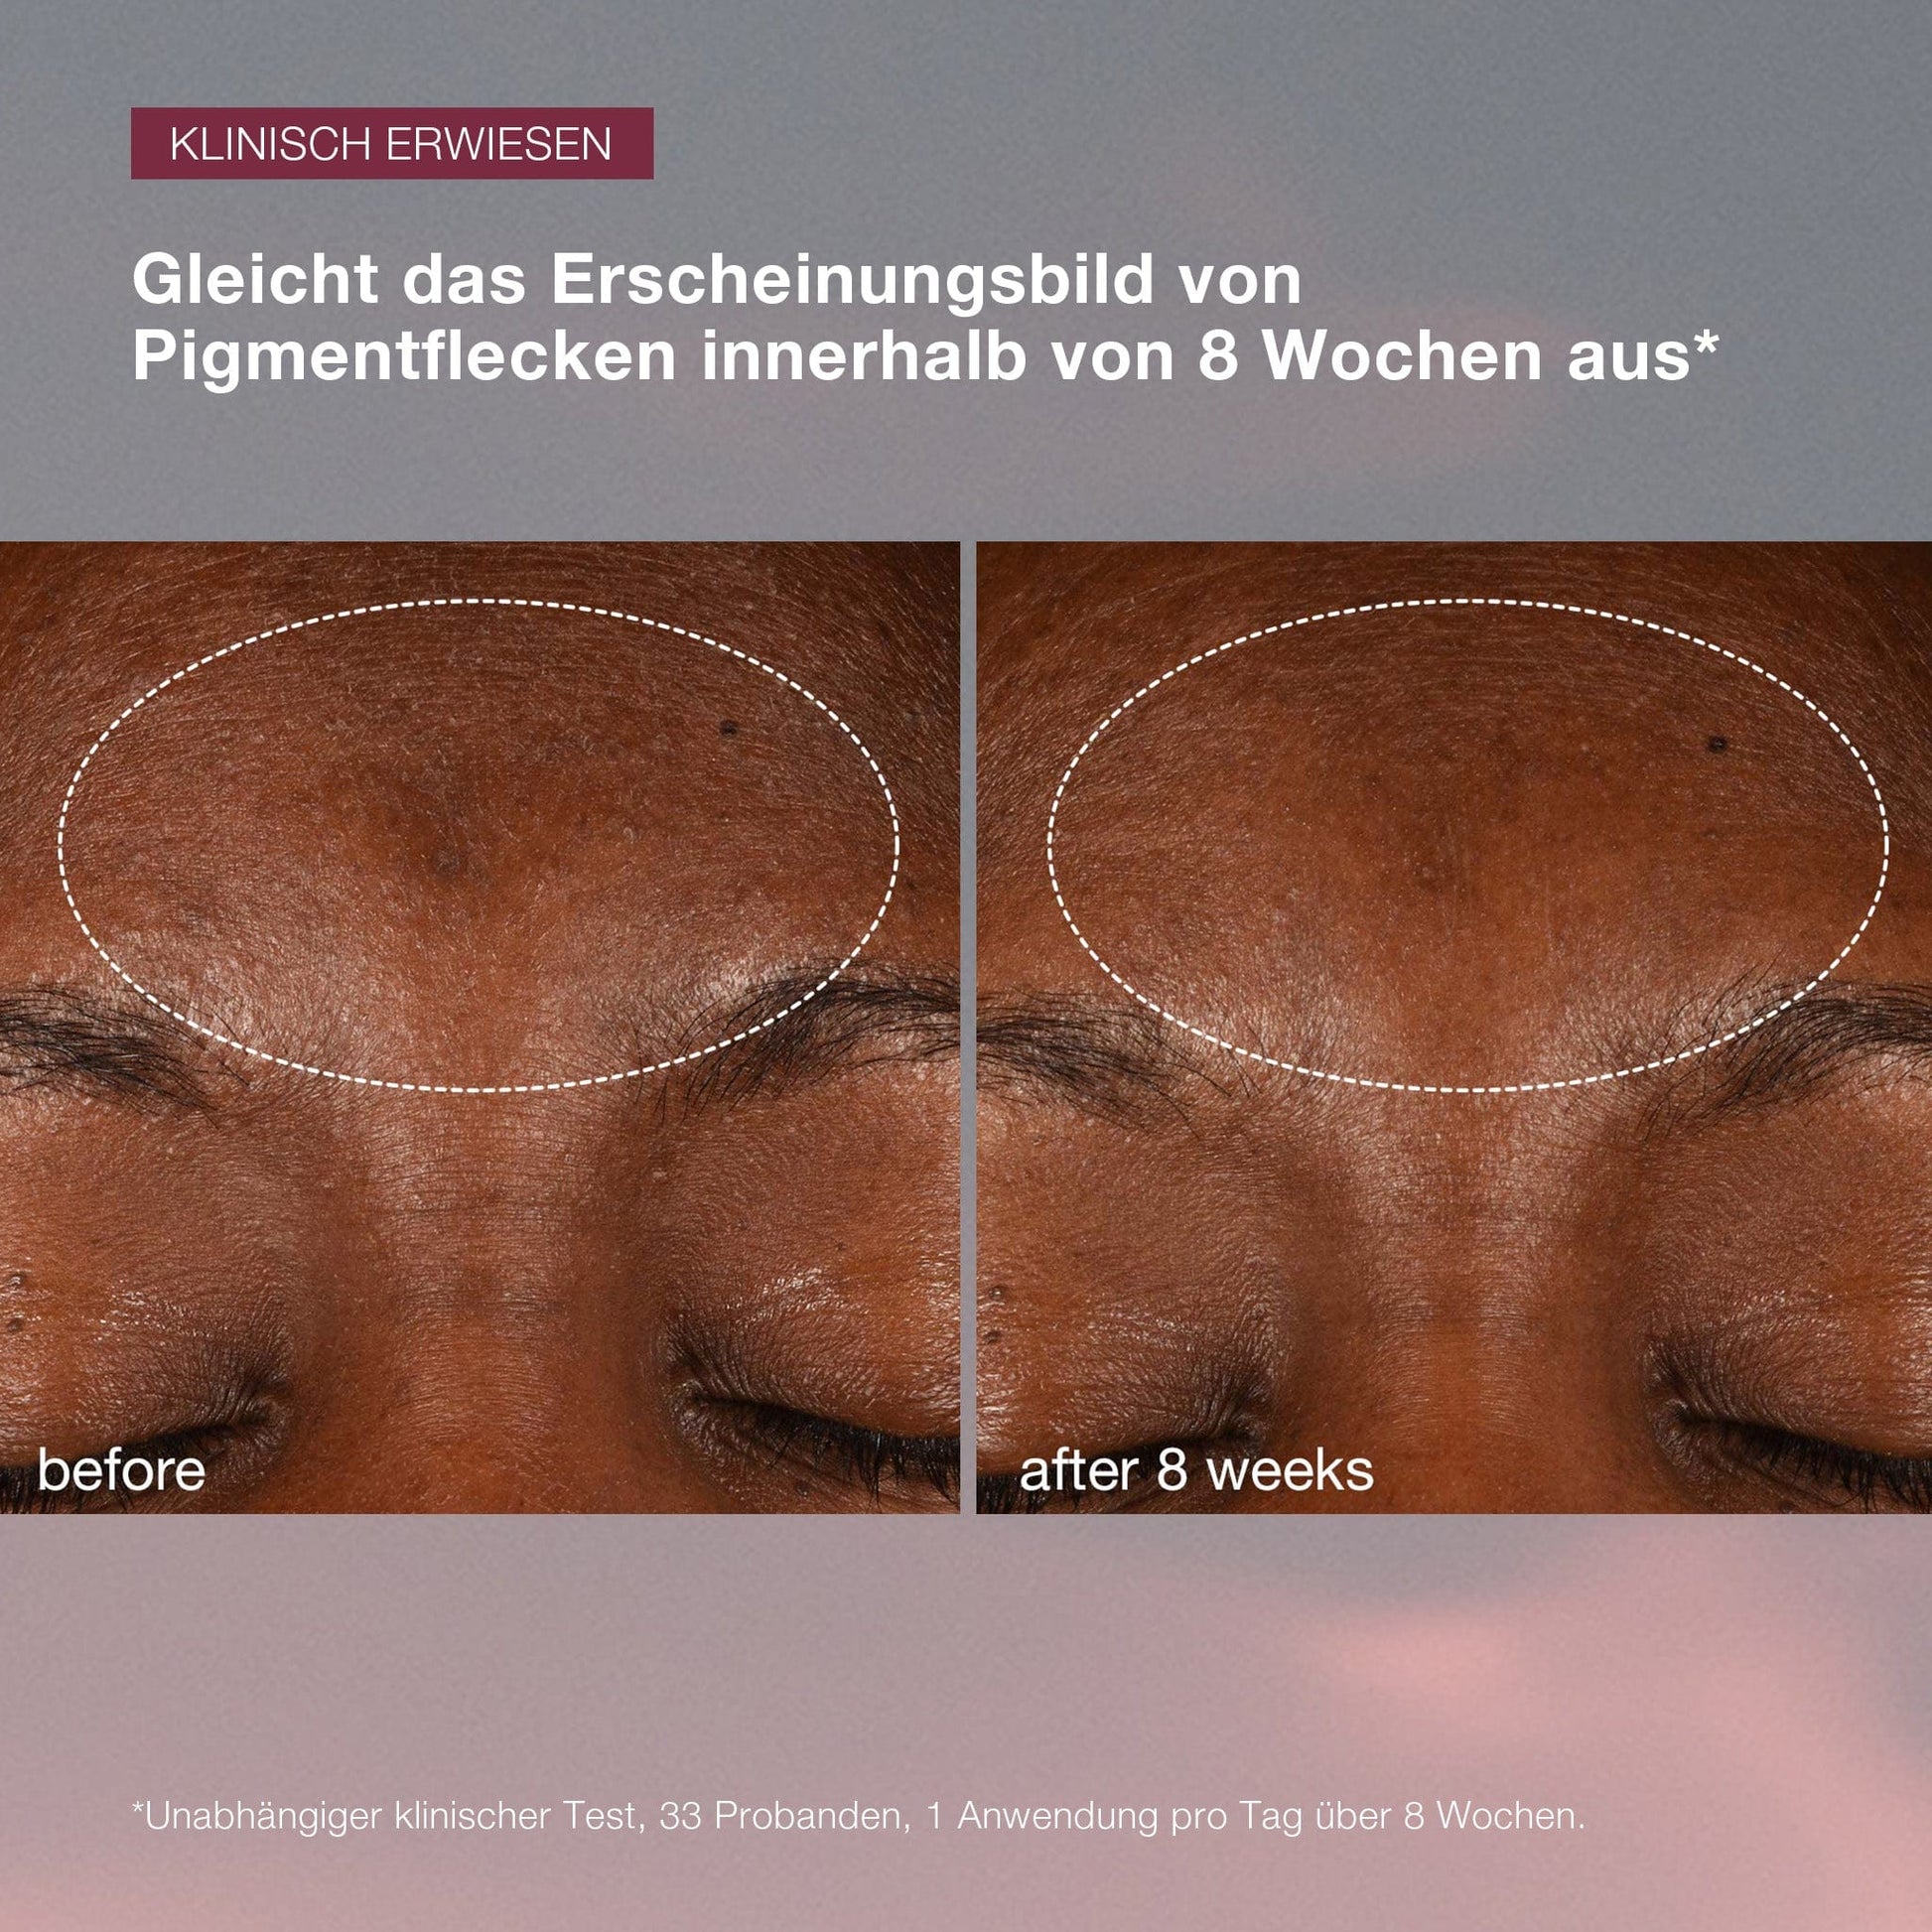 Vorher- und Nachher-Fotos, die die Verringerung der Pigmentierung auf der Stirn einer Person über 8 Wochen zeigen, markiert mit einem Kreis, verbessert durch Dynamic Skin Recovery SPF50 | Tagespflege mit SPF.